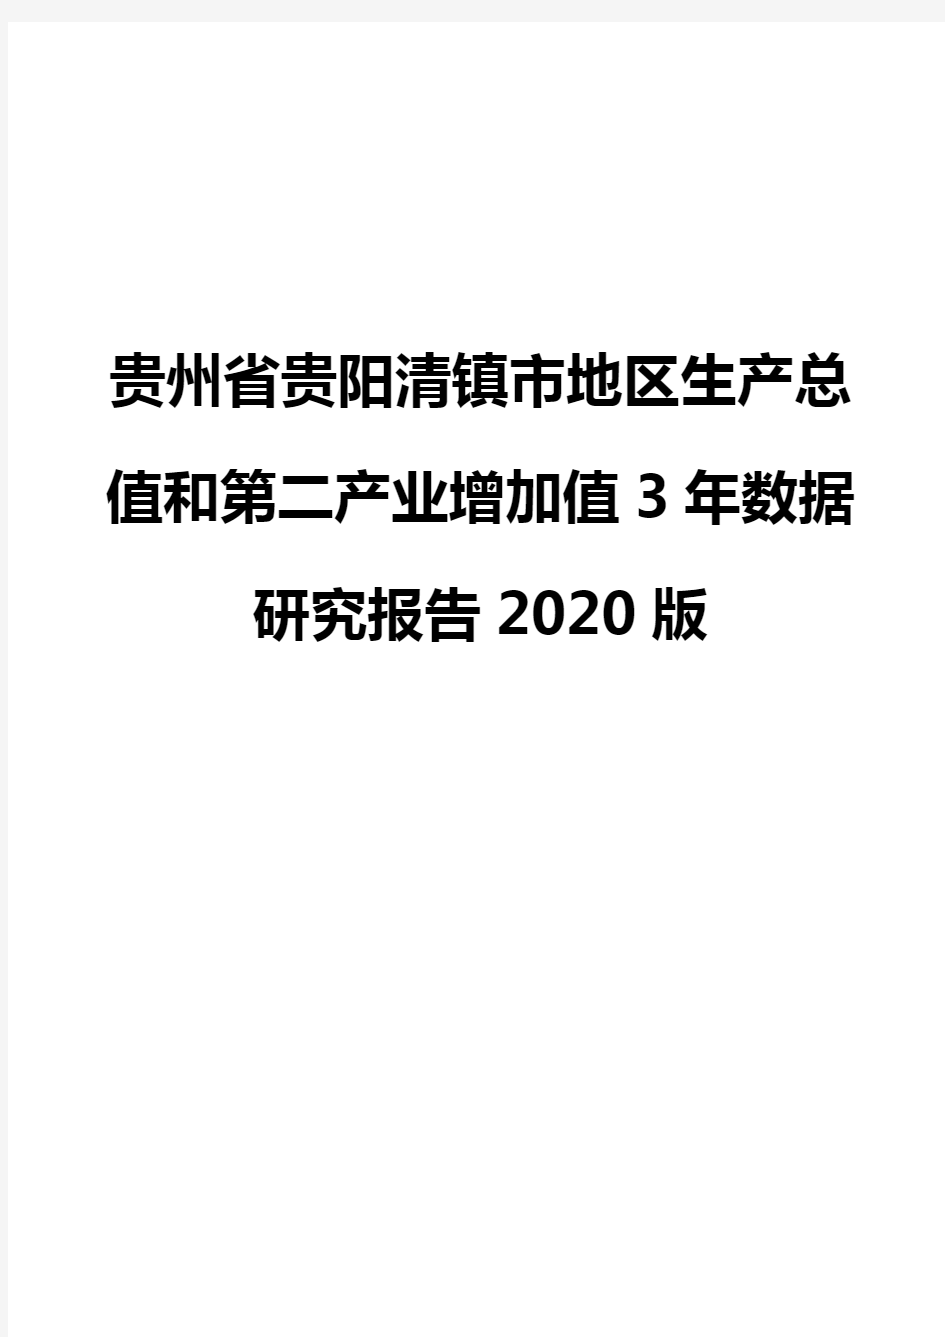 贵州省贵阳清镇市地区生产总值和第二产业增加值3年数据研究报告2020版